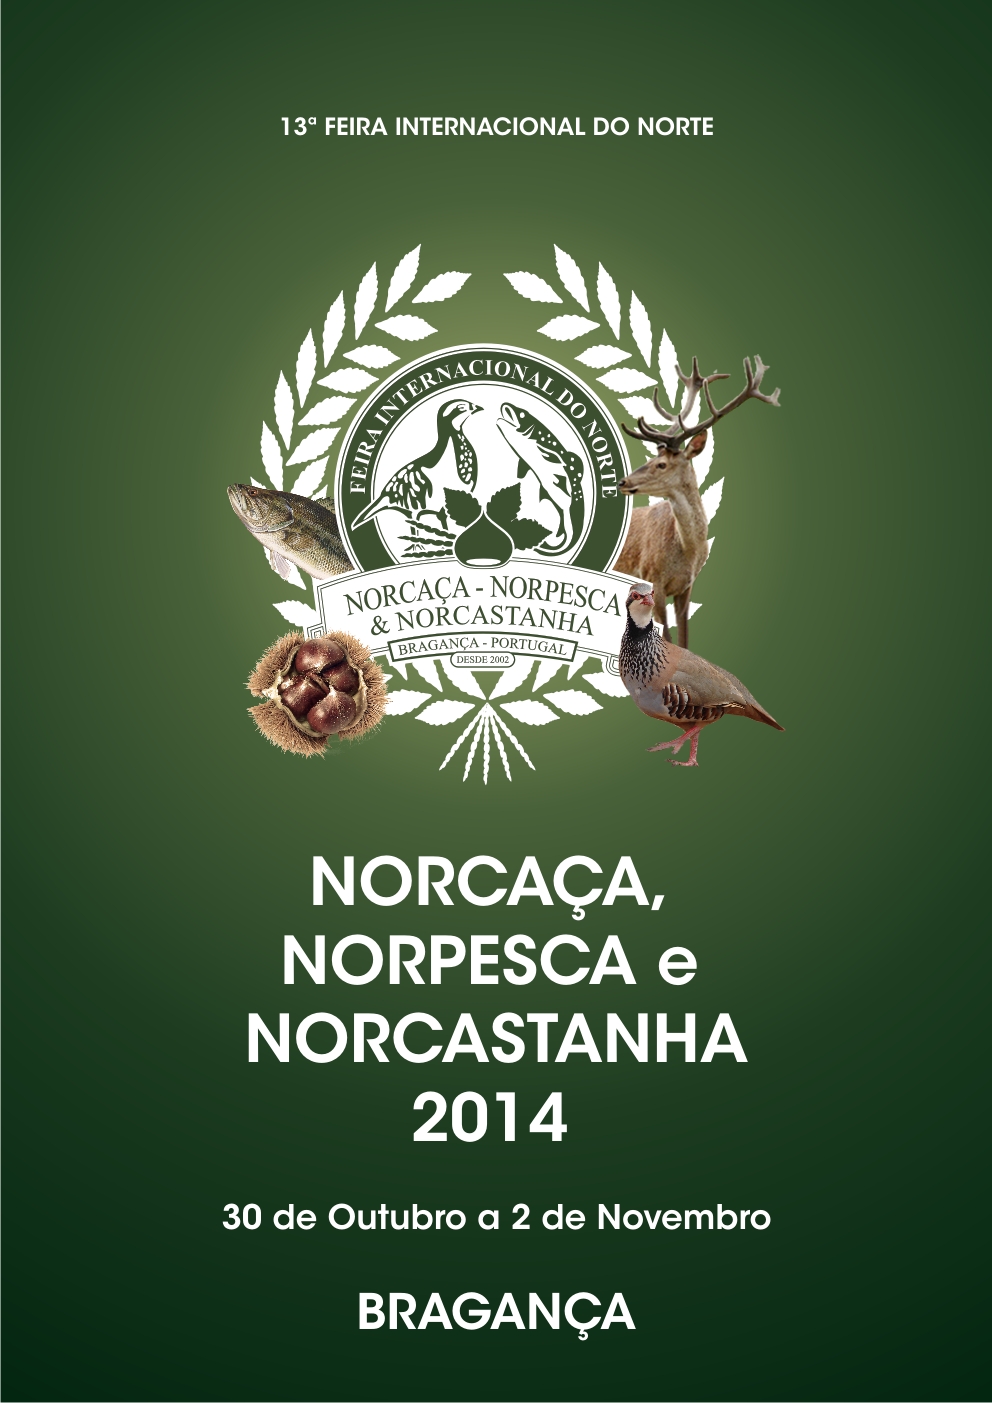 Norcaça, Norpesca & Norcastanha 2014 – 13ª Feira Internacional do Norte